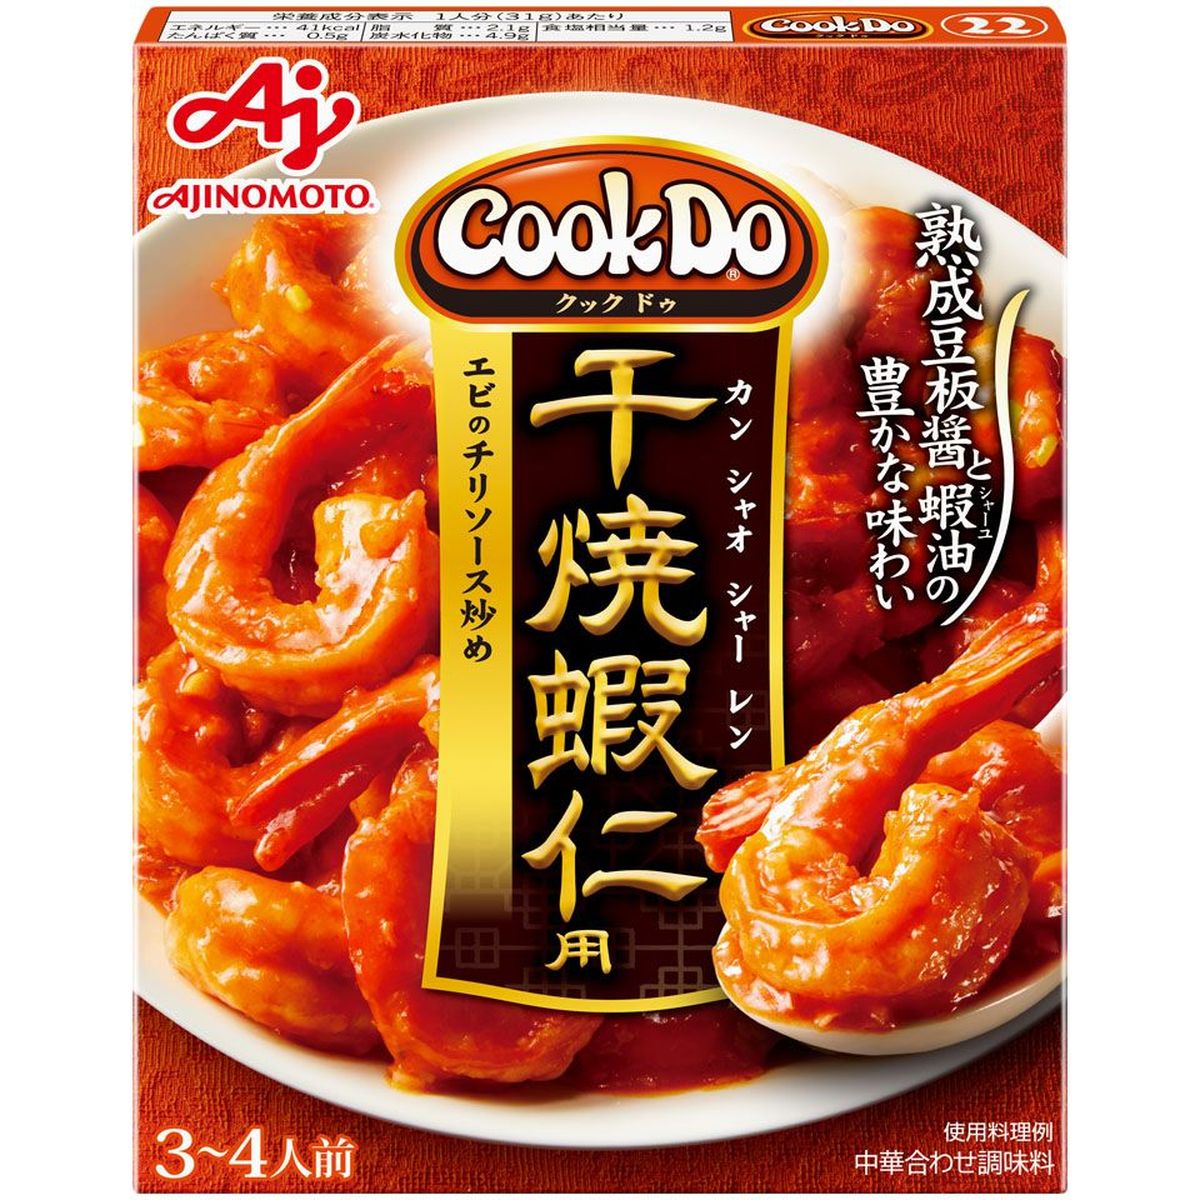 味の素  CookDo22  干焼蝦仁用  110g  x  10個